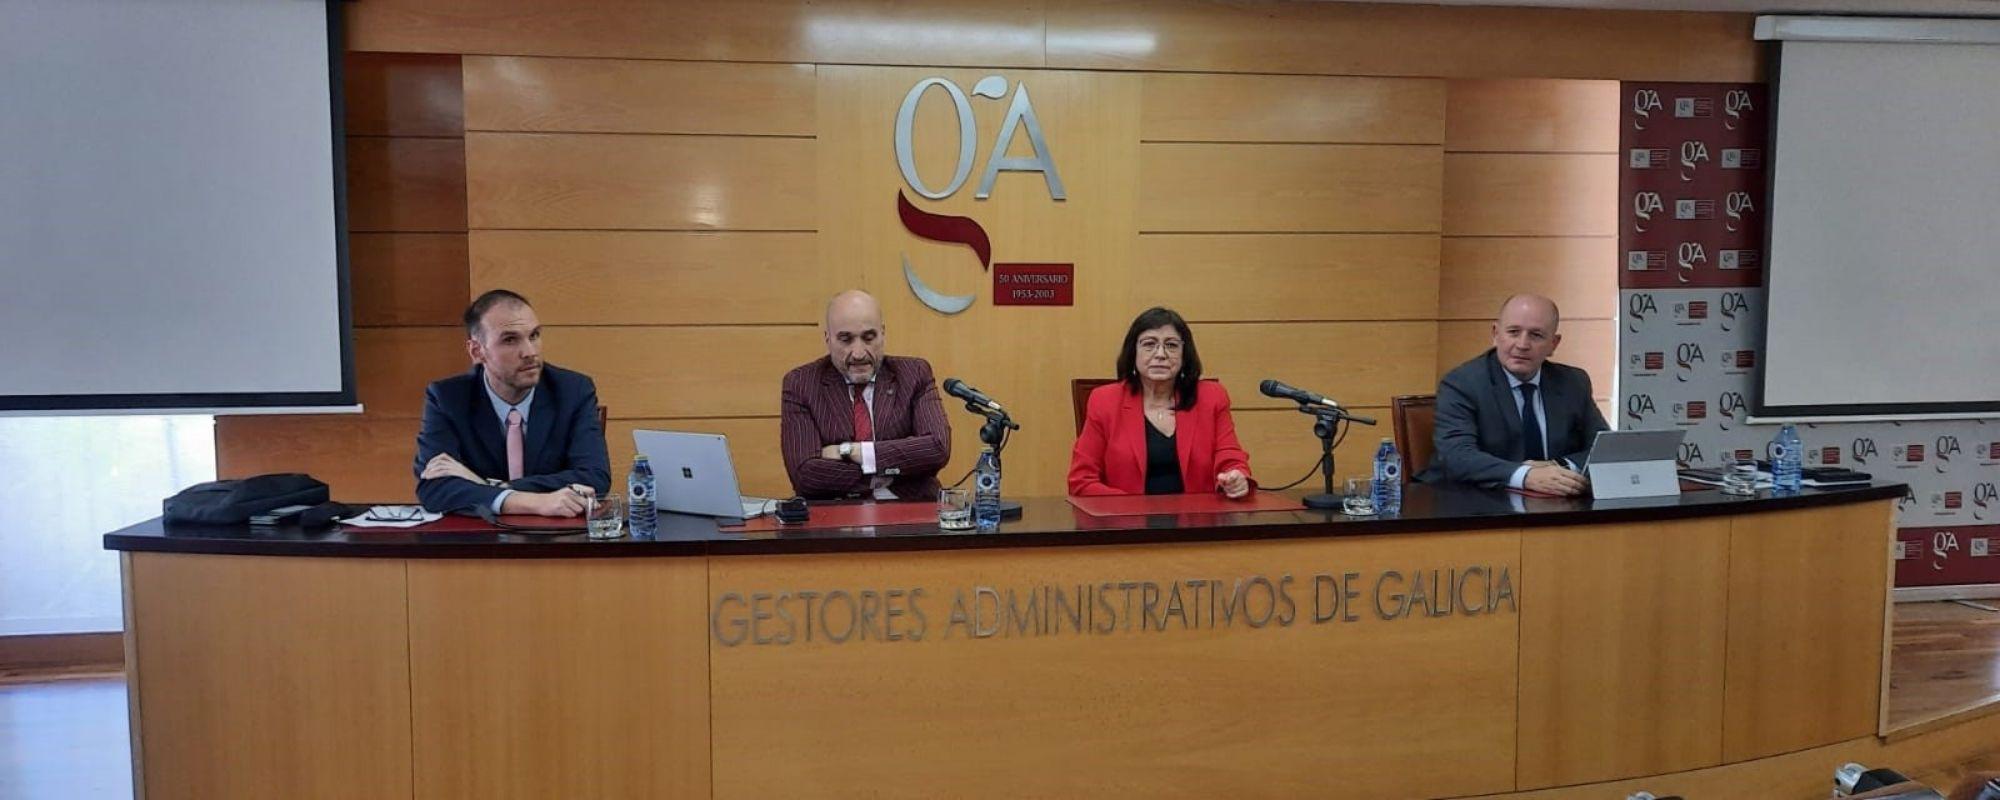 SIGA 98 presenta SigaFirma y la plataforma de catastro a los colegiados de Galicia